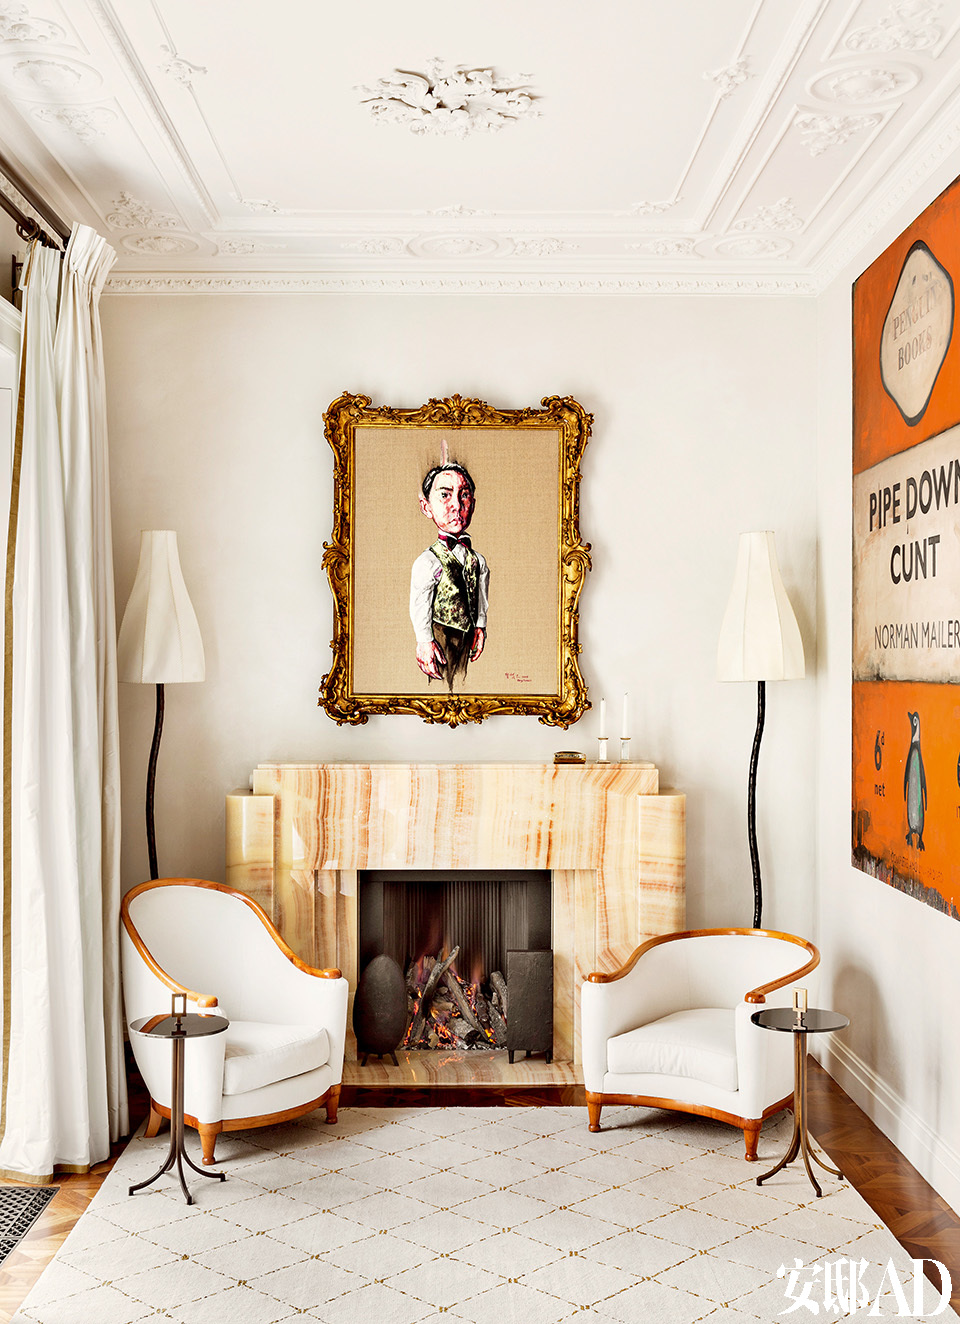 在Roussev夫妇的收藏里，一些国际艺术家的作品十分突出，比如中国艺术家曾梵志的作品。面对着炉子的是两把法国设计师Jules Leleu（1883-1961）设计的Art Deco风格扶手椅，两把椅子的椅背高度不同，谨慎地打破了对称性。黄铜和漆玻璃制作的小边桌们是Francis Sultana于2011年设计的“Homage to the Art Deco”系列的作品。右边是艺术家兼作家Harland Miller的画作“Penguin Classics-Inspired Art”系列。扶
手椅后面的落地灯是Garouste & Bonetti委托David Gill画廊生产的。地毯是由 Francis Sultana量身定制设计的。壁炉内的柴架是Francis Sultana于2011年的“Homage to the Art Deco”系列作品。